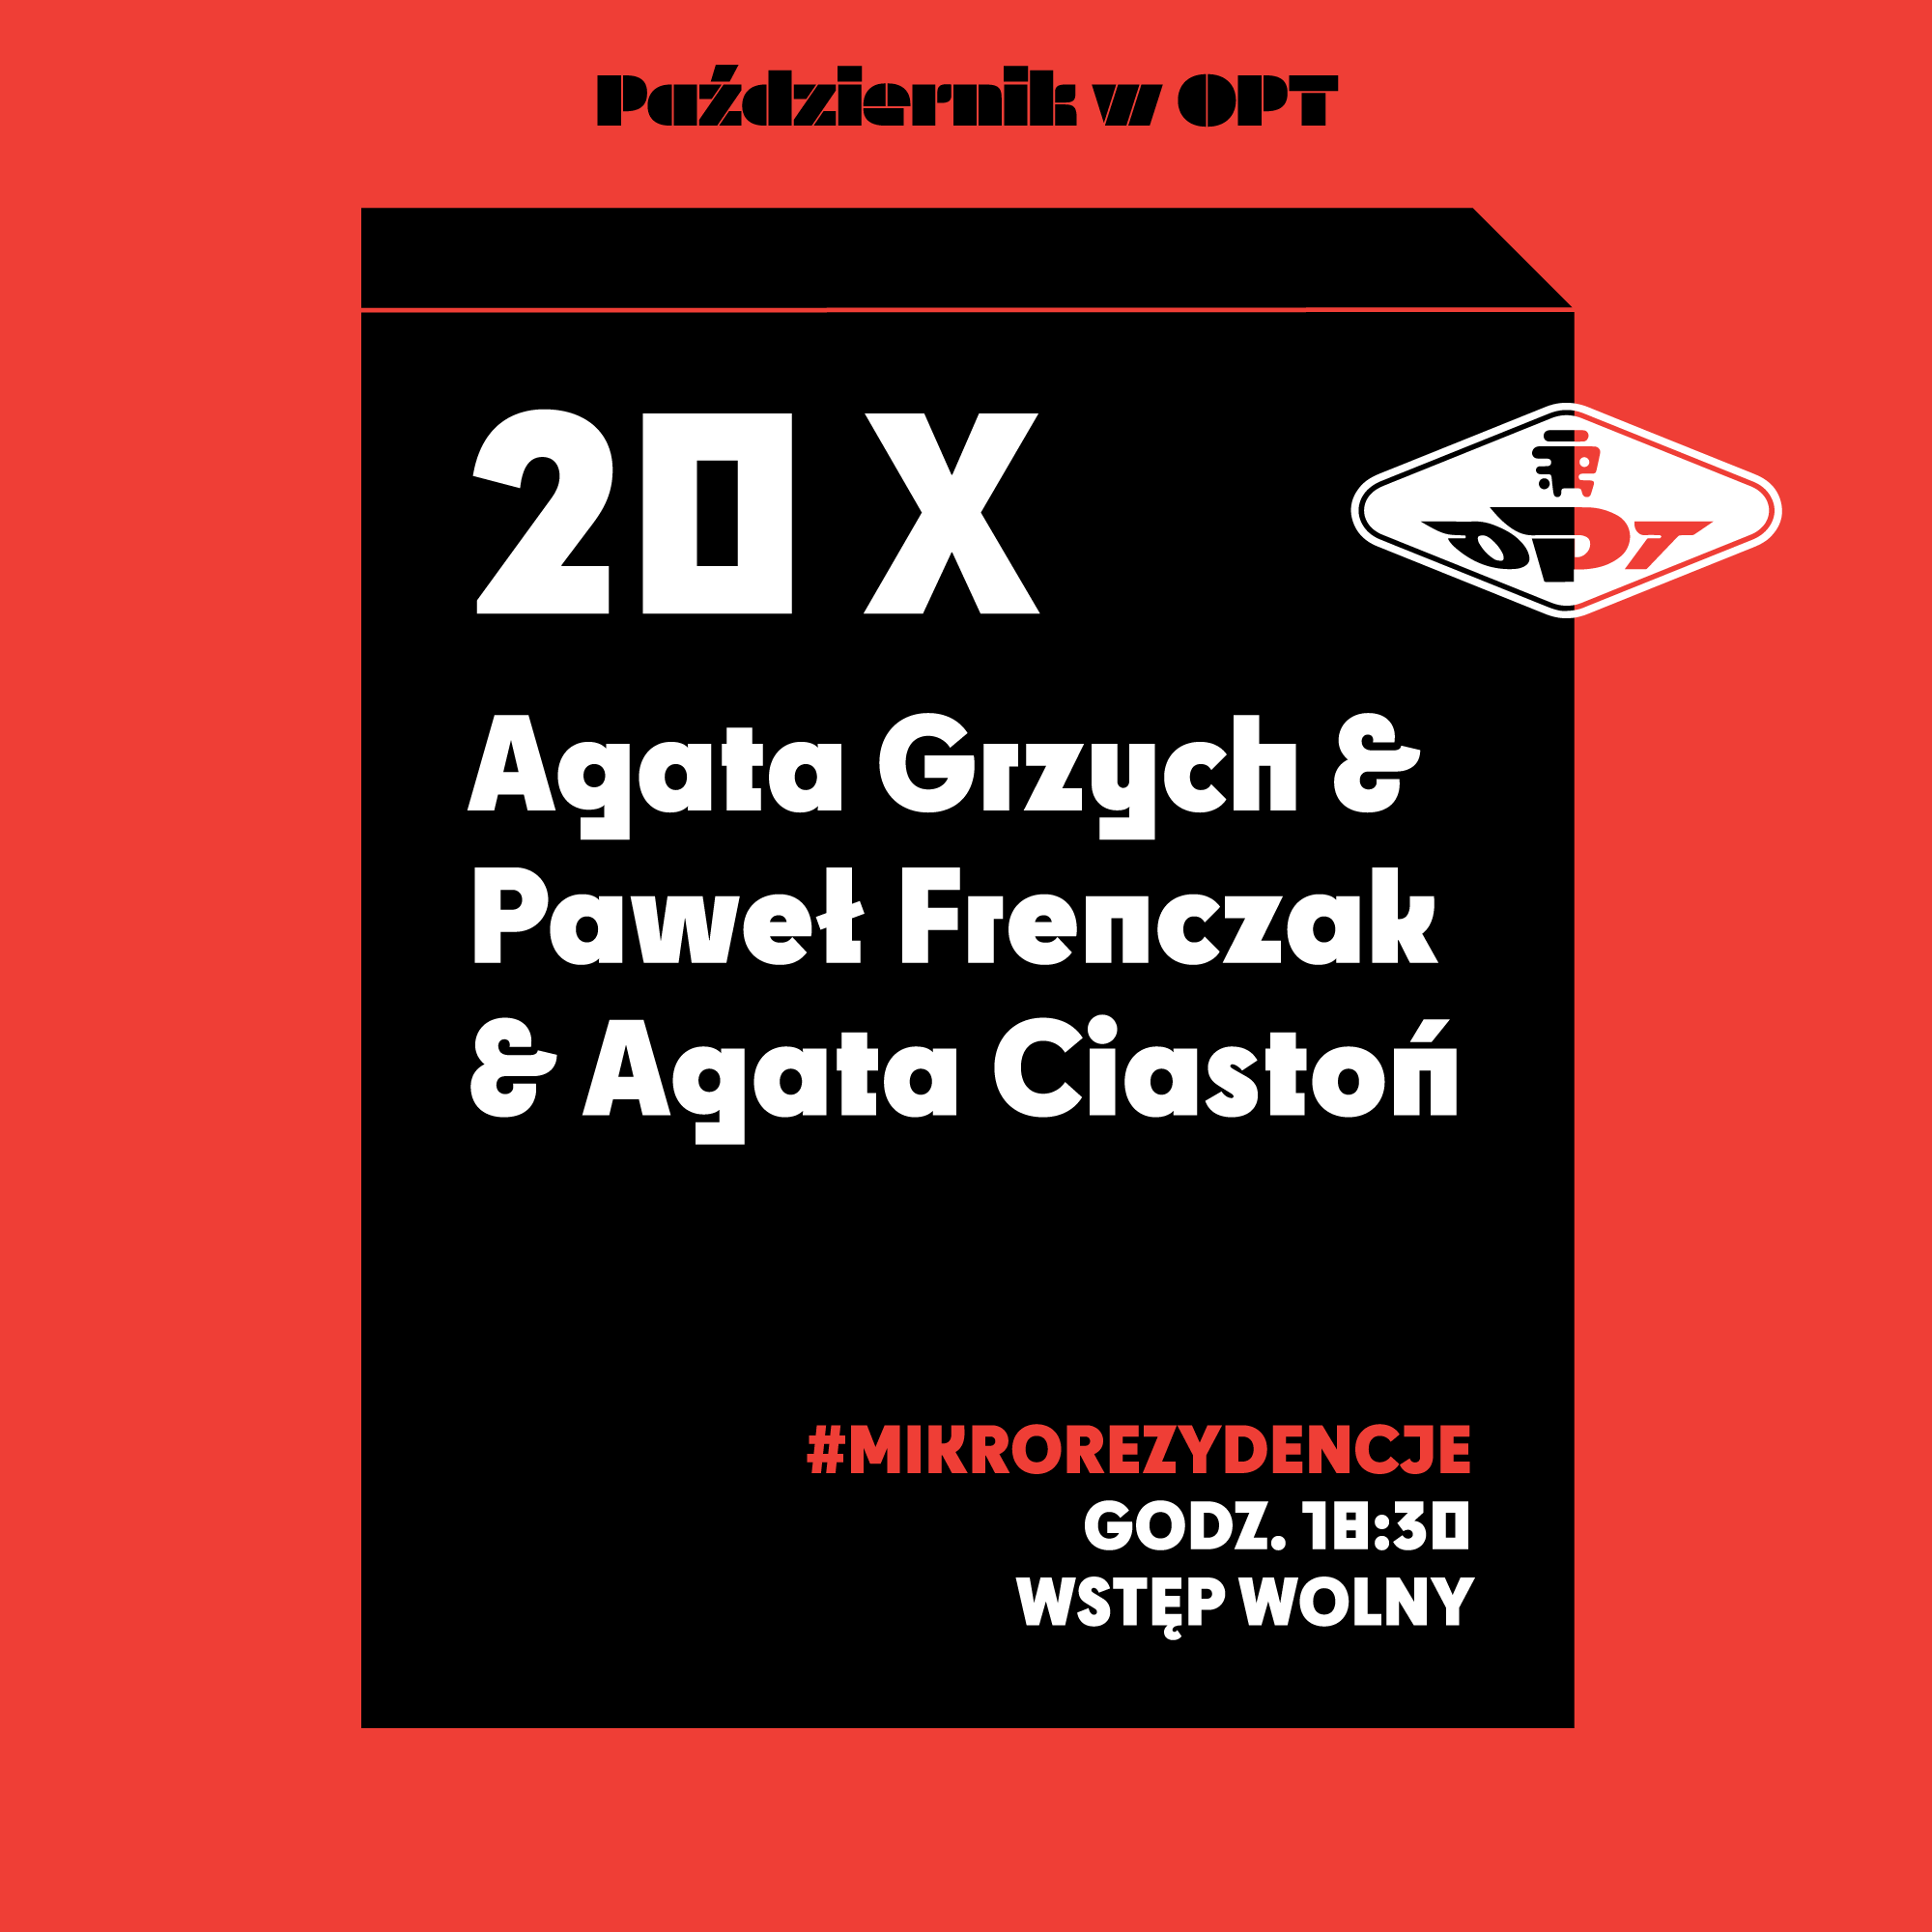 Agata Grzych, Paweł Frenczak, Agata Ciastoń – spotkanie (20.10)